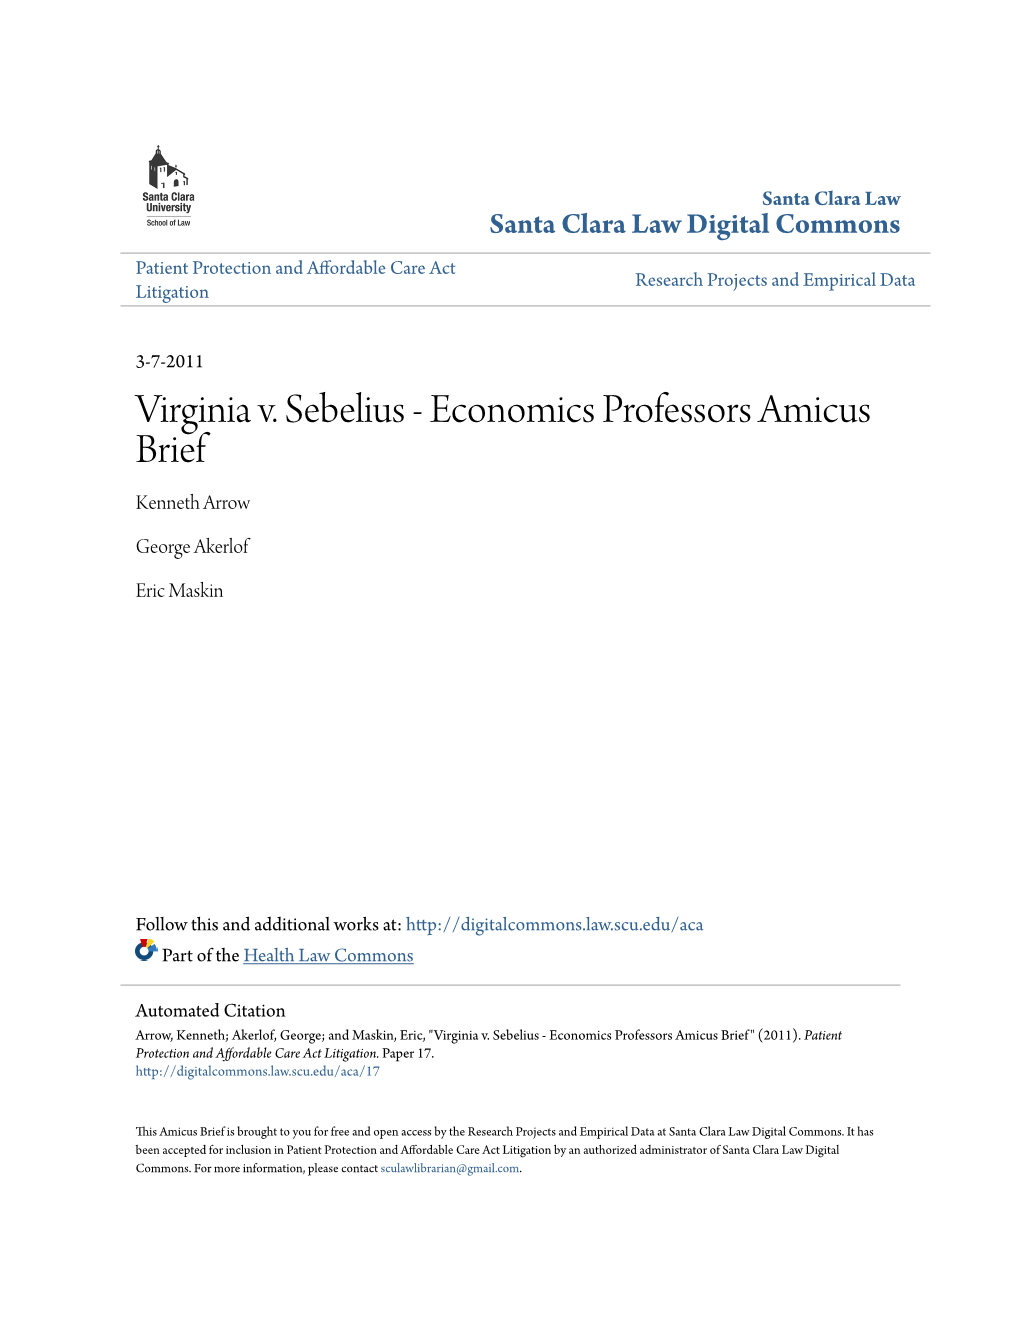 Virginia V. Sebelius - Economics Professors Amicus Brief Kenneth Arrow